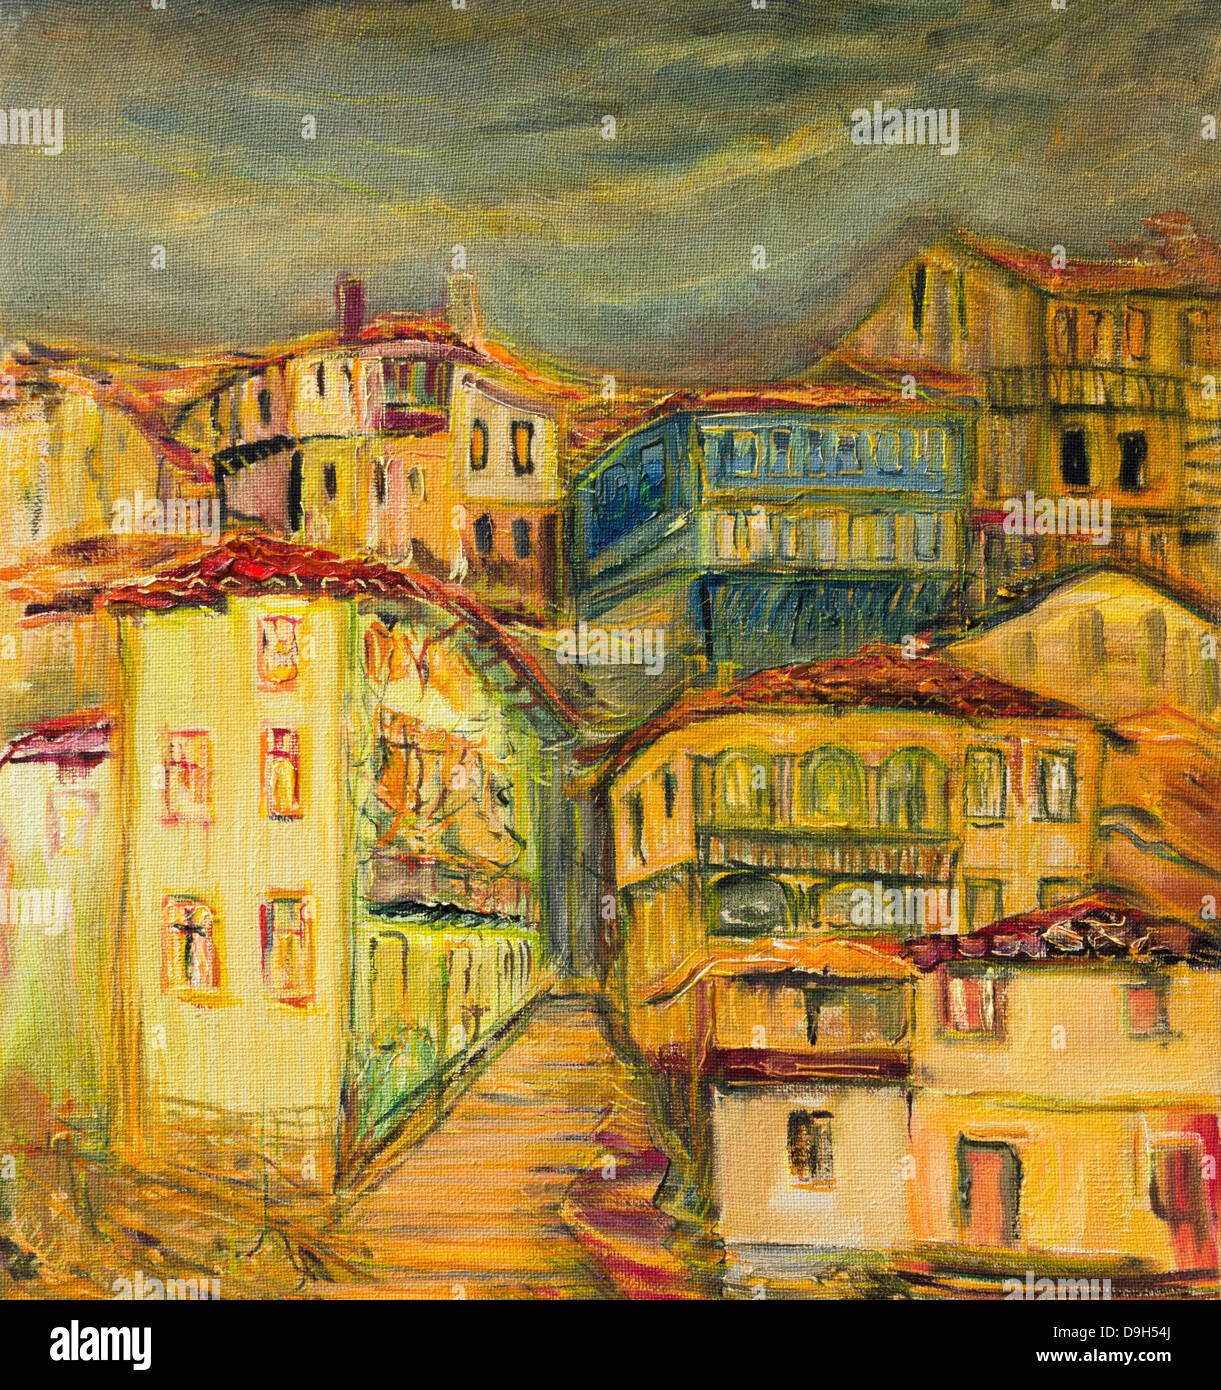 Un dipinto ad olio su tela di vecchi vivid case di villaggio con strade strette spalmata su una collina con grigio scuro dello sfondo del cielo. Foto Stock